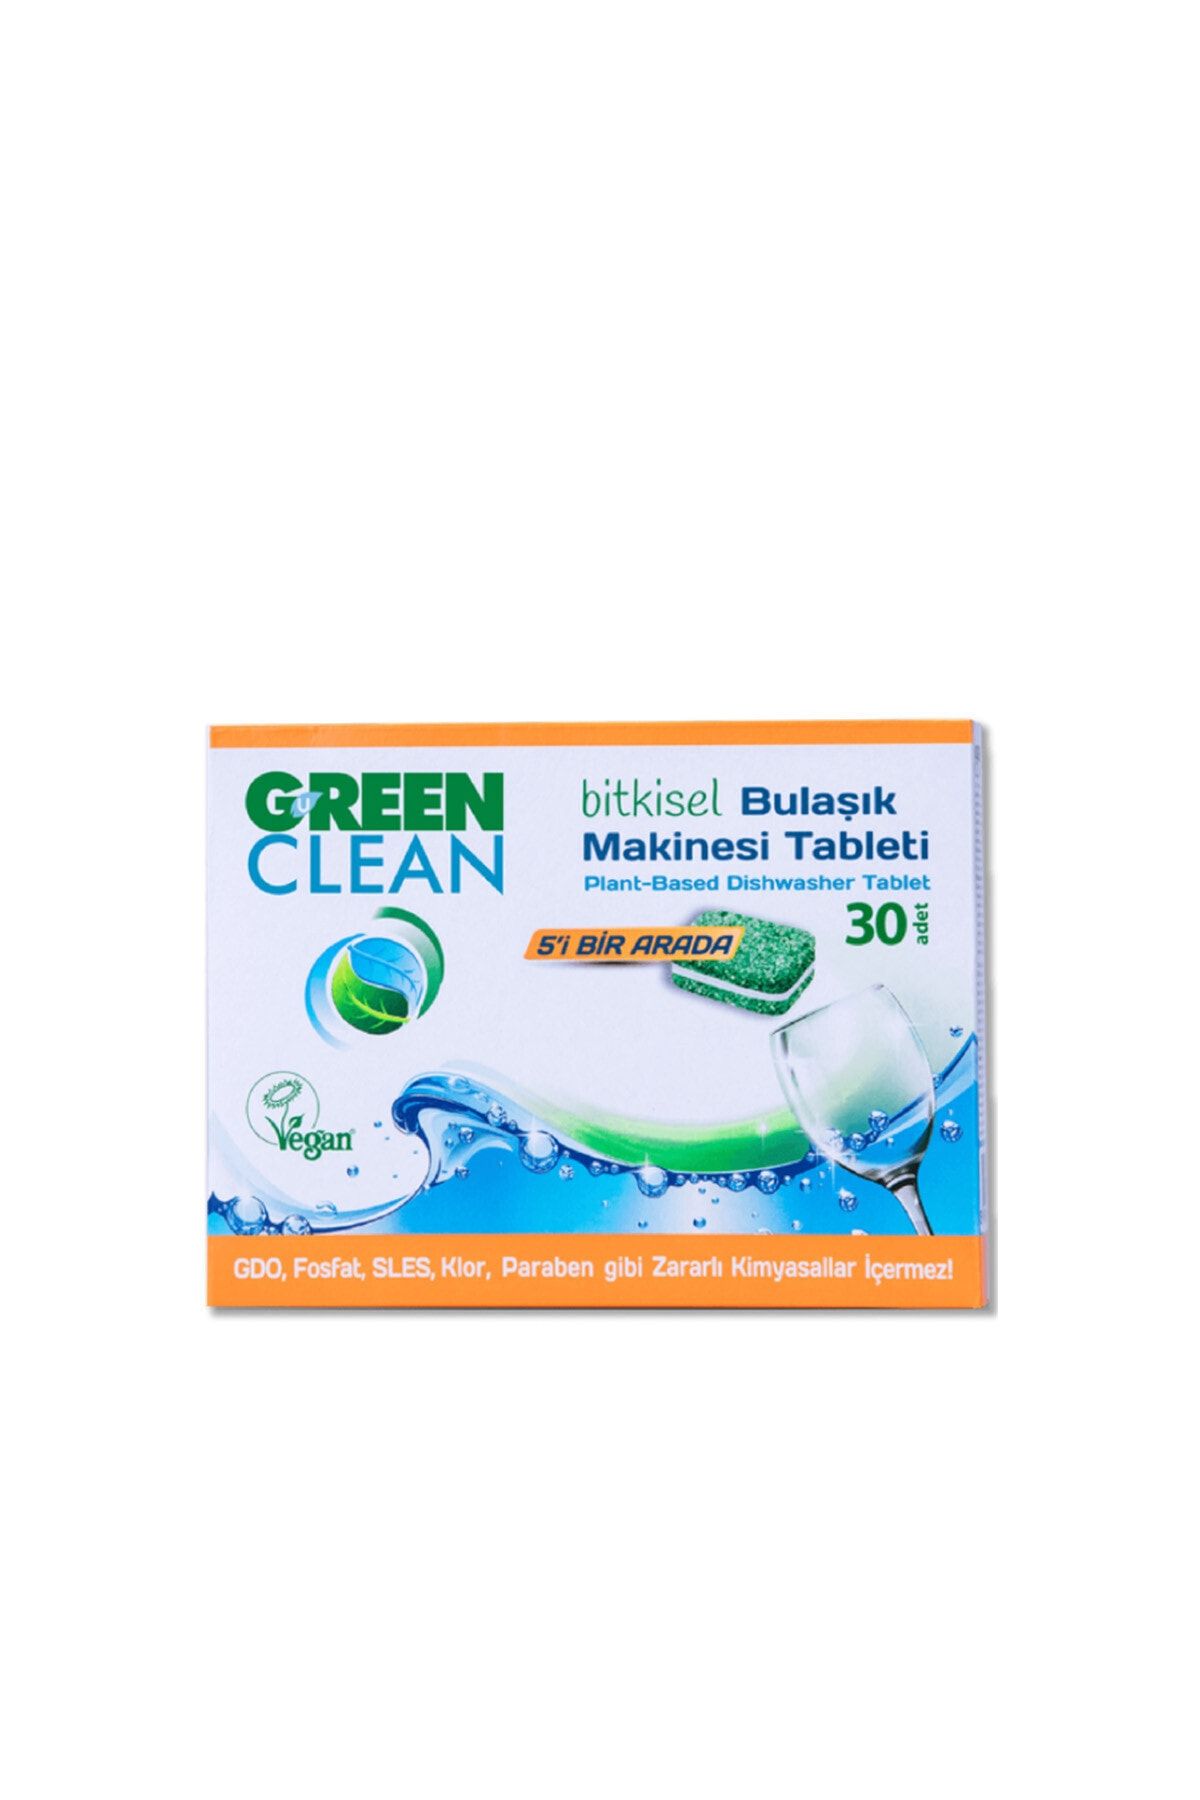 Green Clean Bitkisel Bulaşık Makinesi Tableti 30 Adet